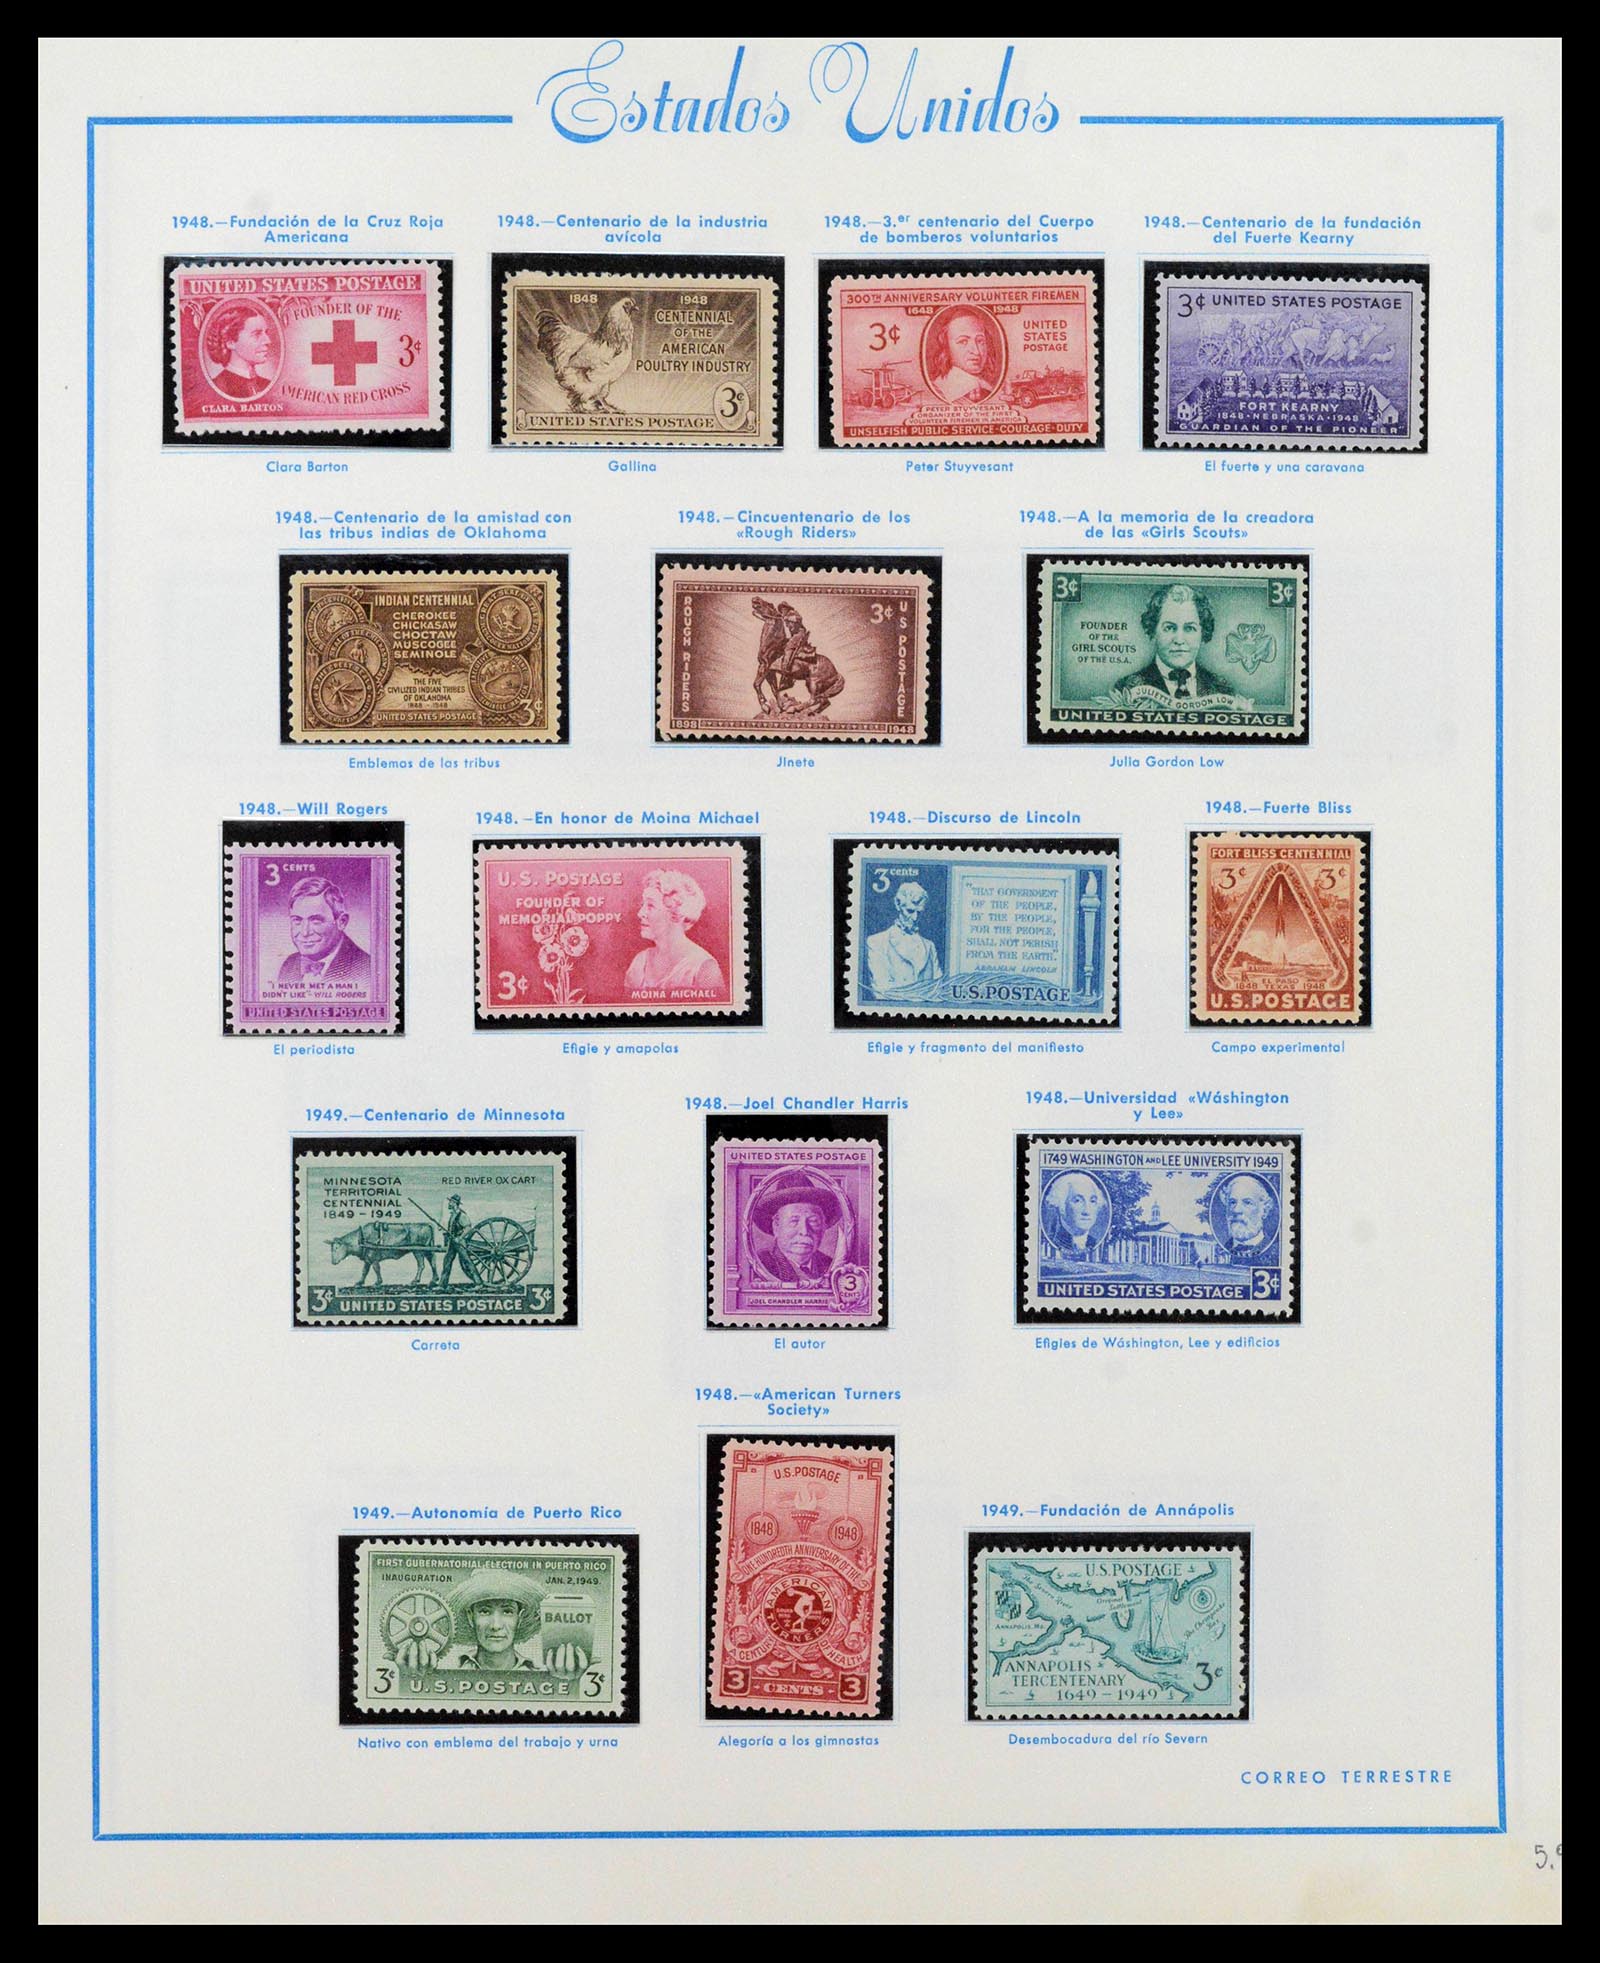 39190 0028 - Stamp collection 39190 USA 1851-1975.